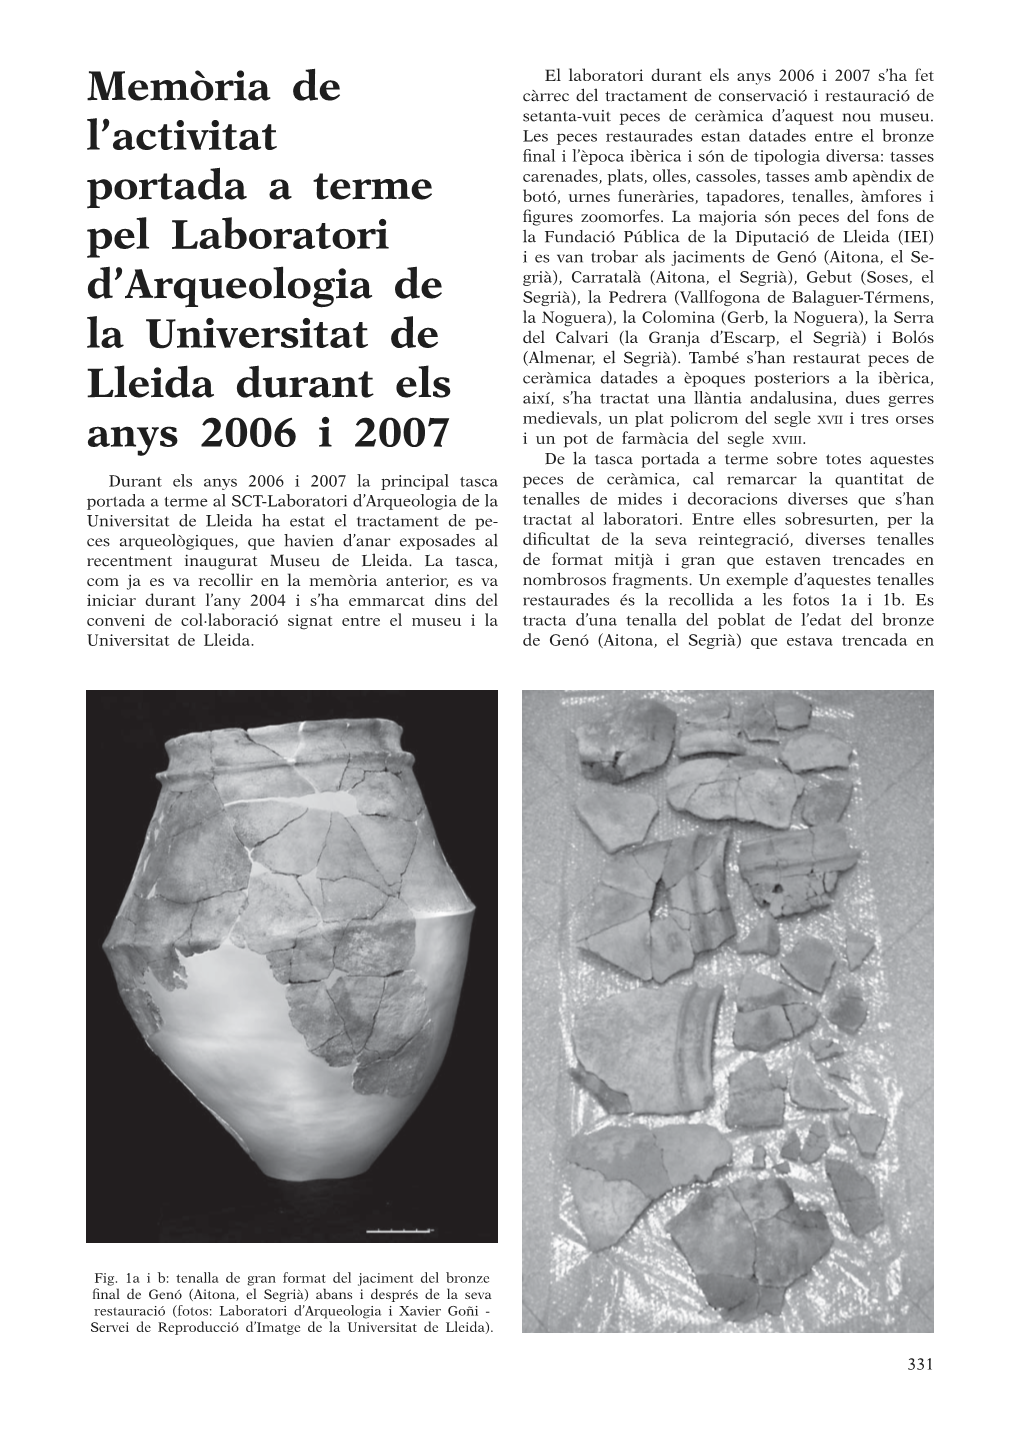 Memòria De L'activitat Portada a Terme Pel Laboratori D'arqueologia De La Universitat De Lleida Durant Els Anys 2006 I 2007